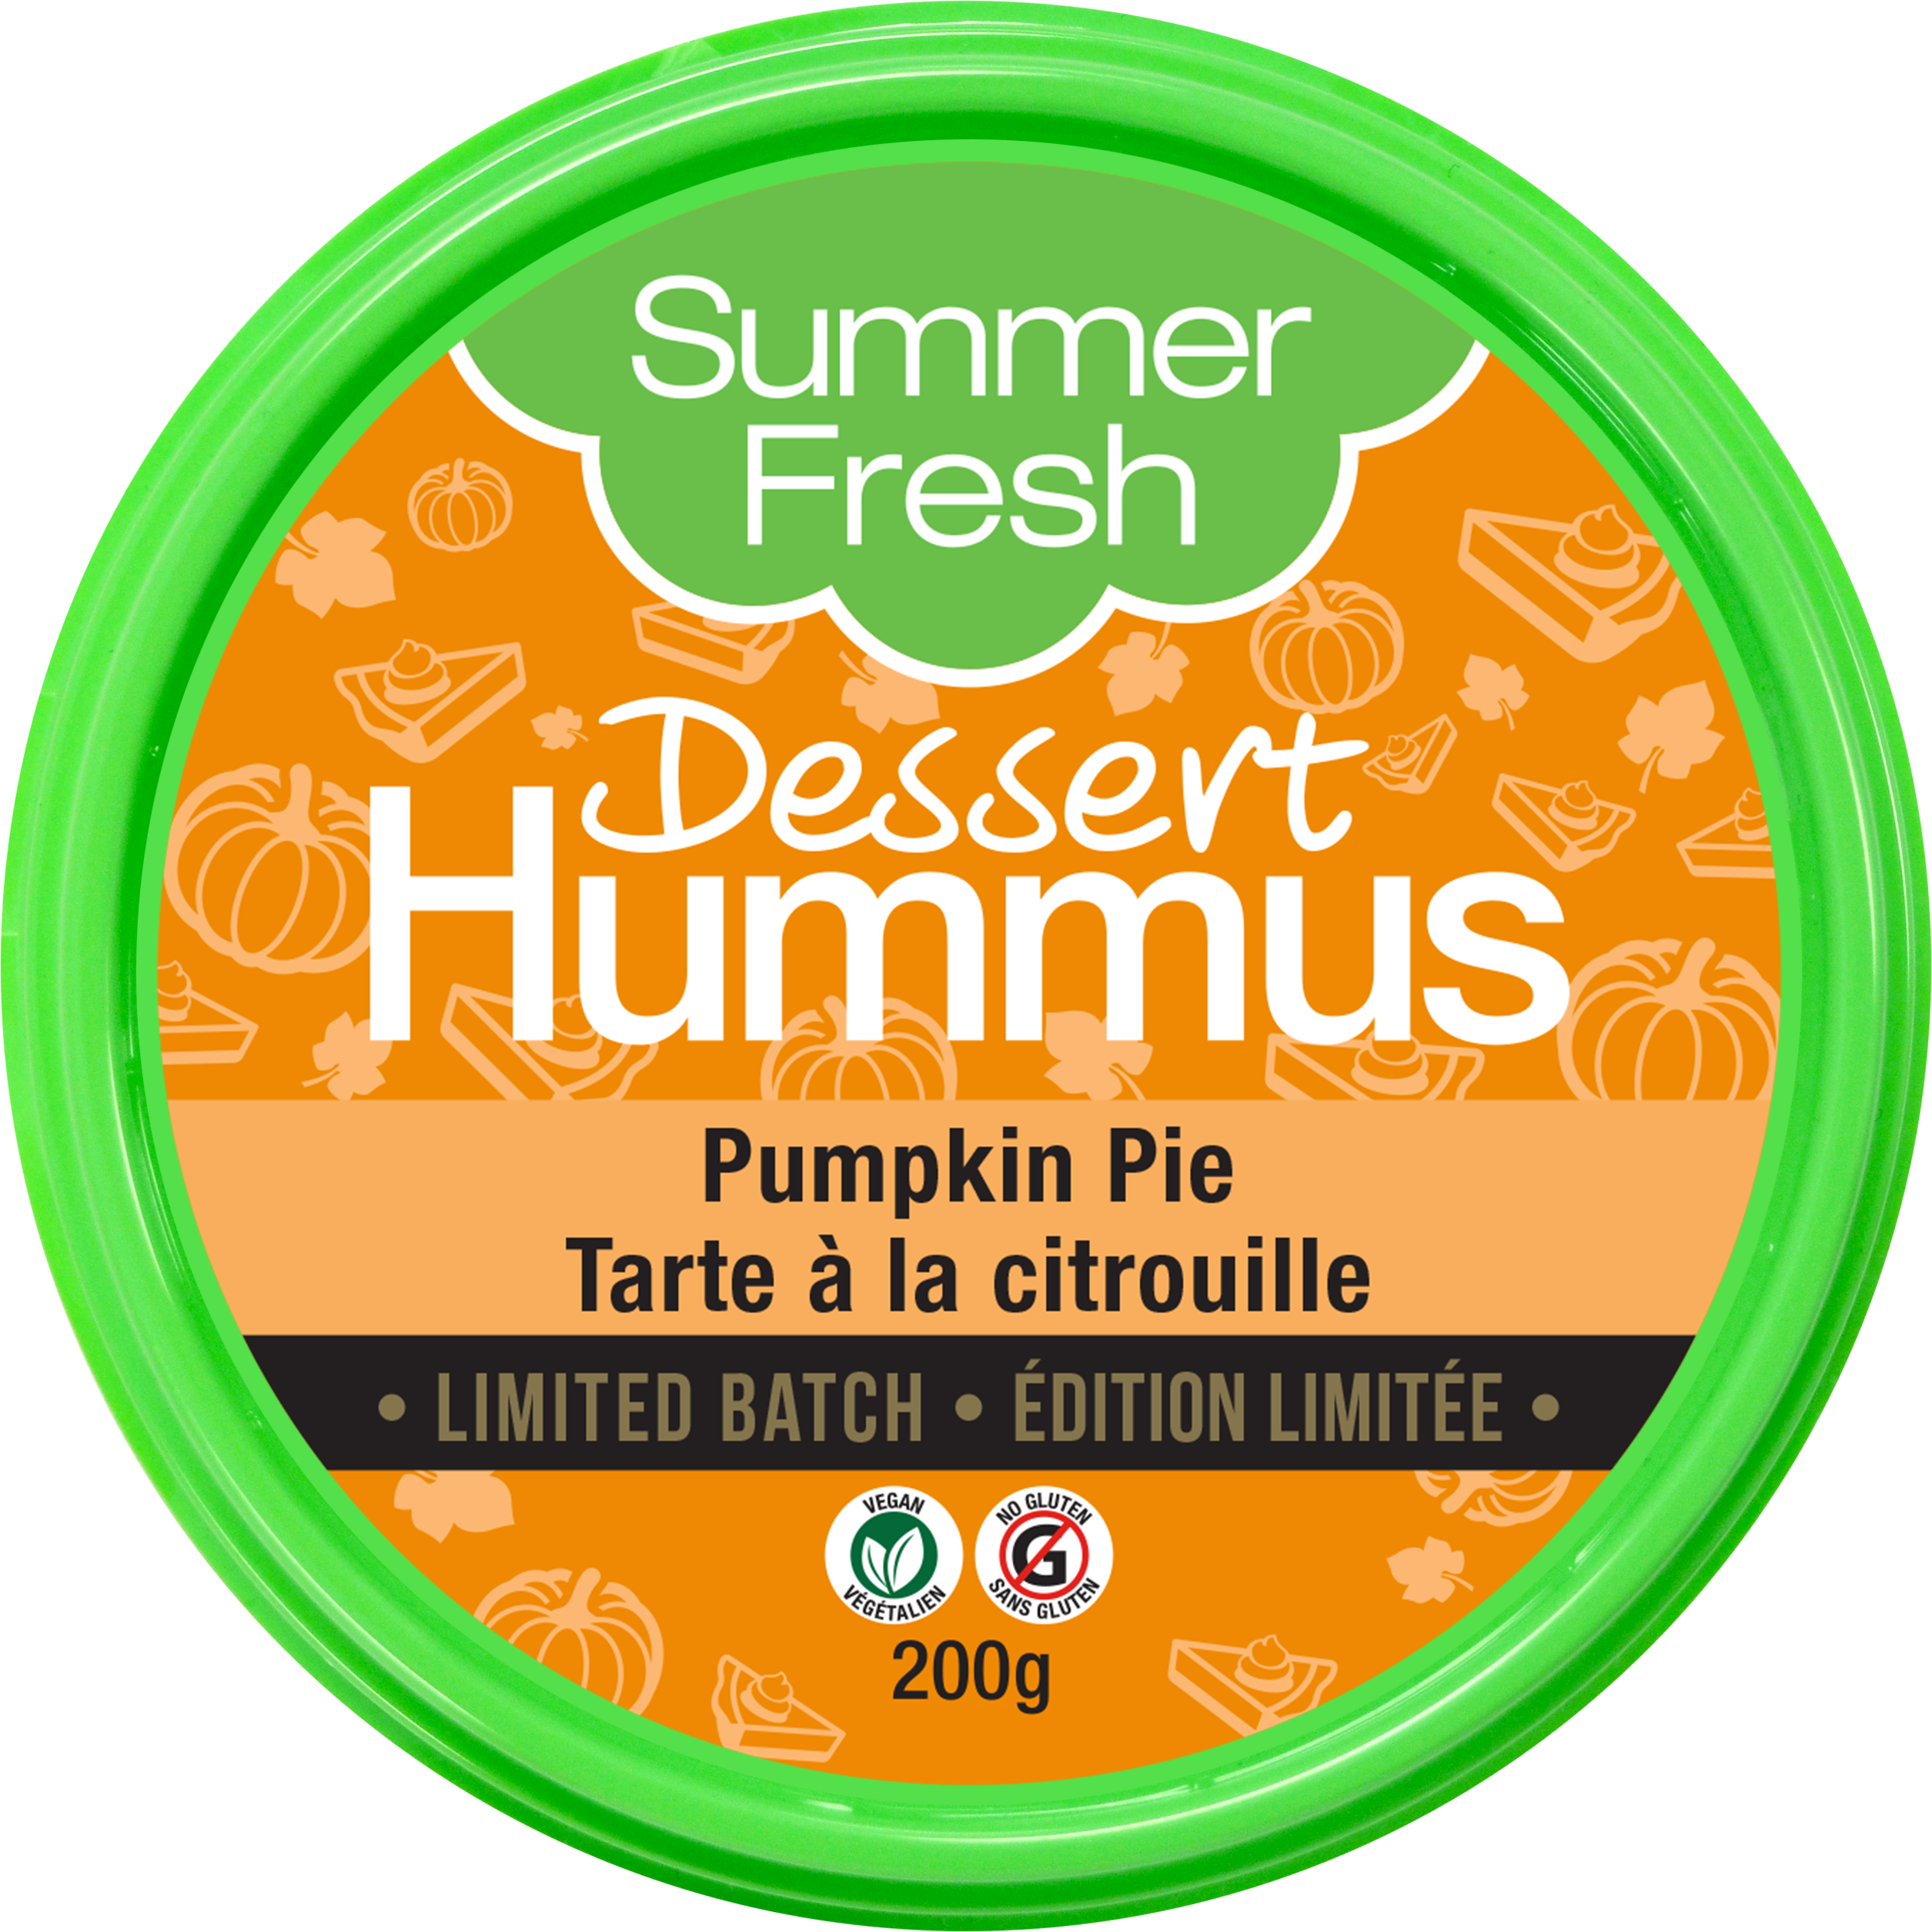 Pumpkin Pie Hummus